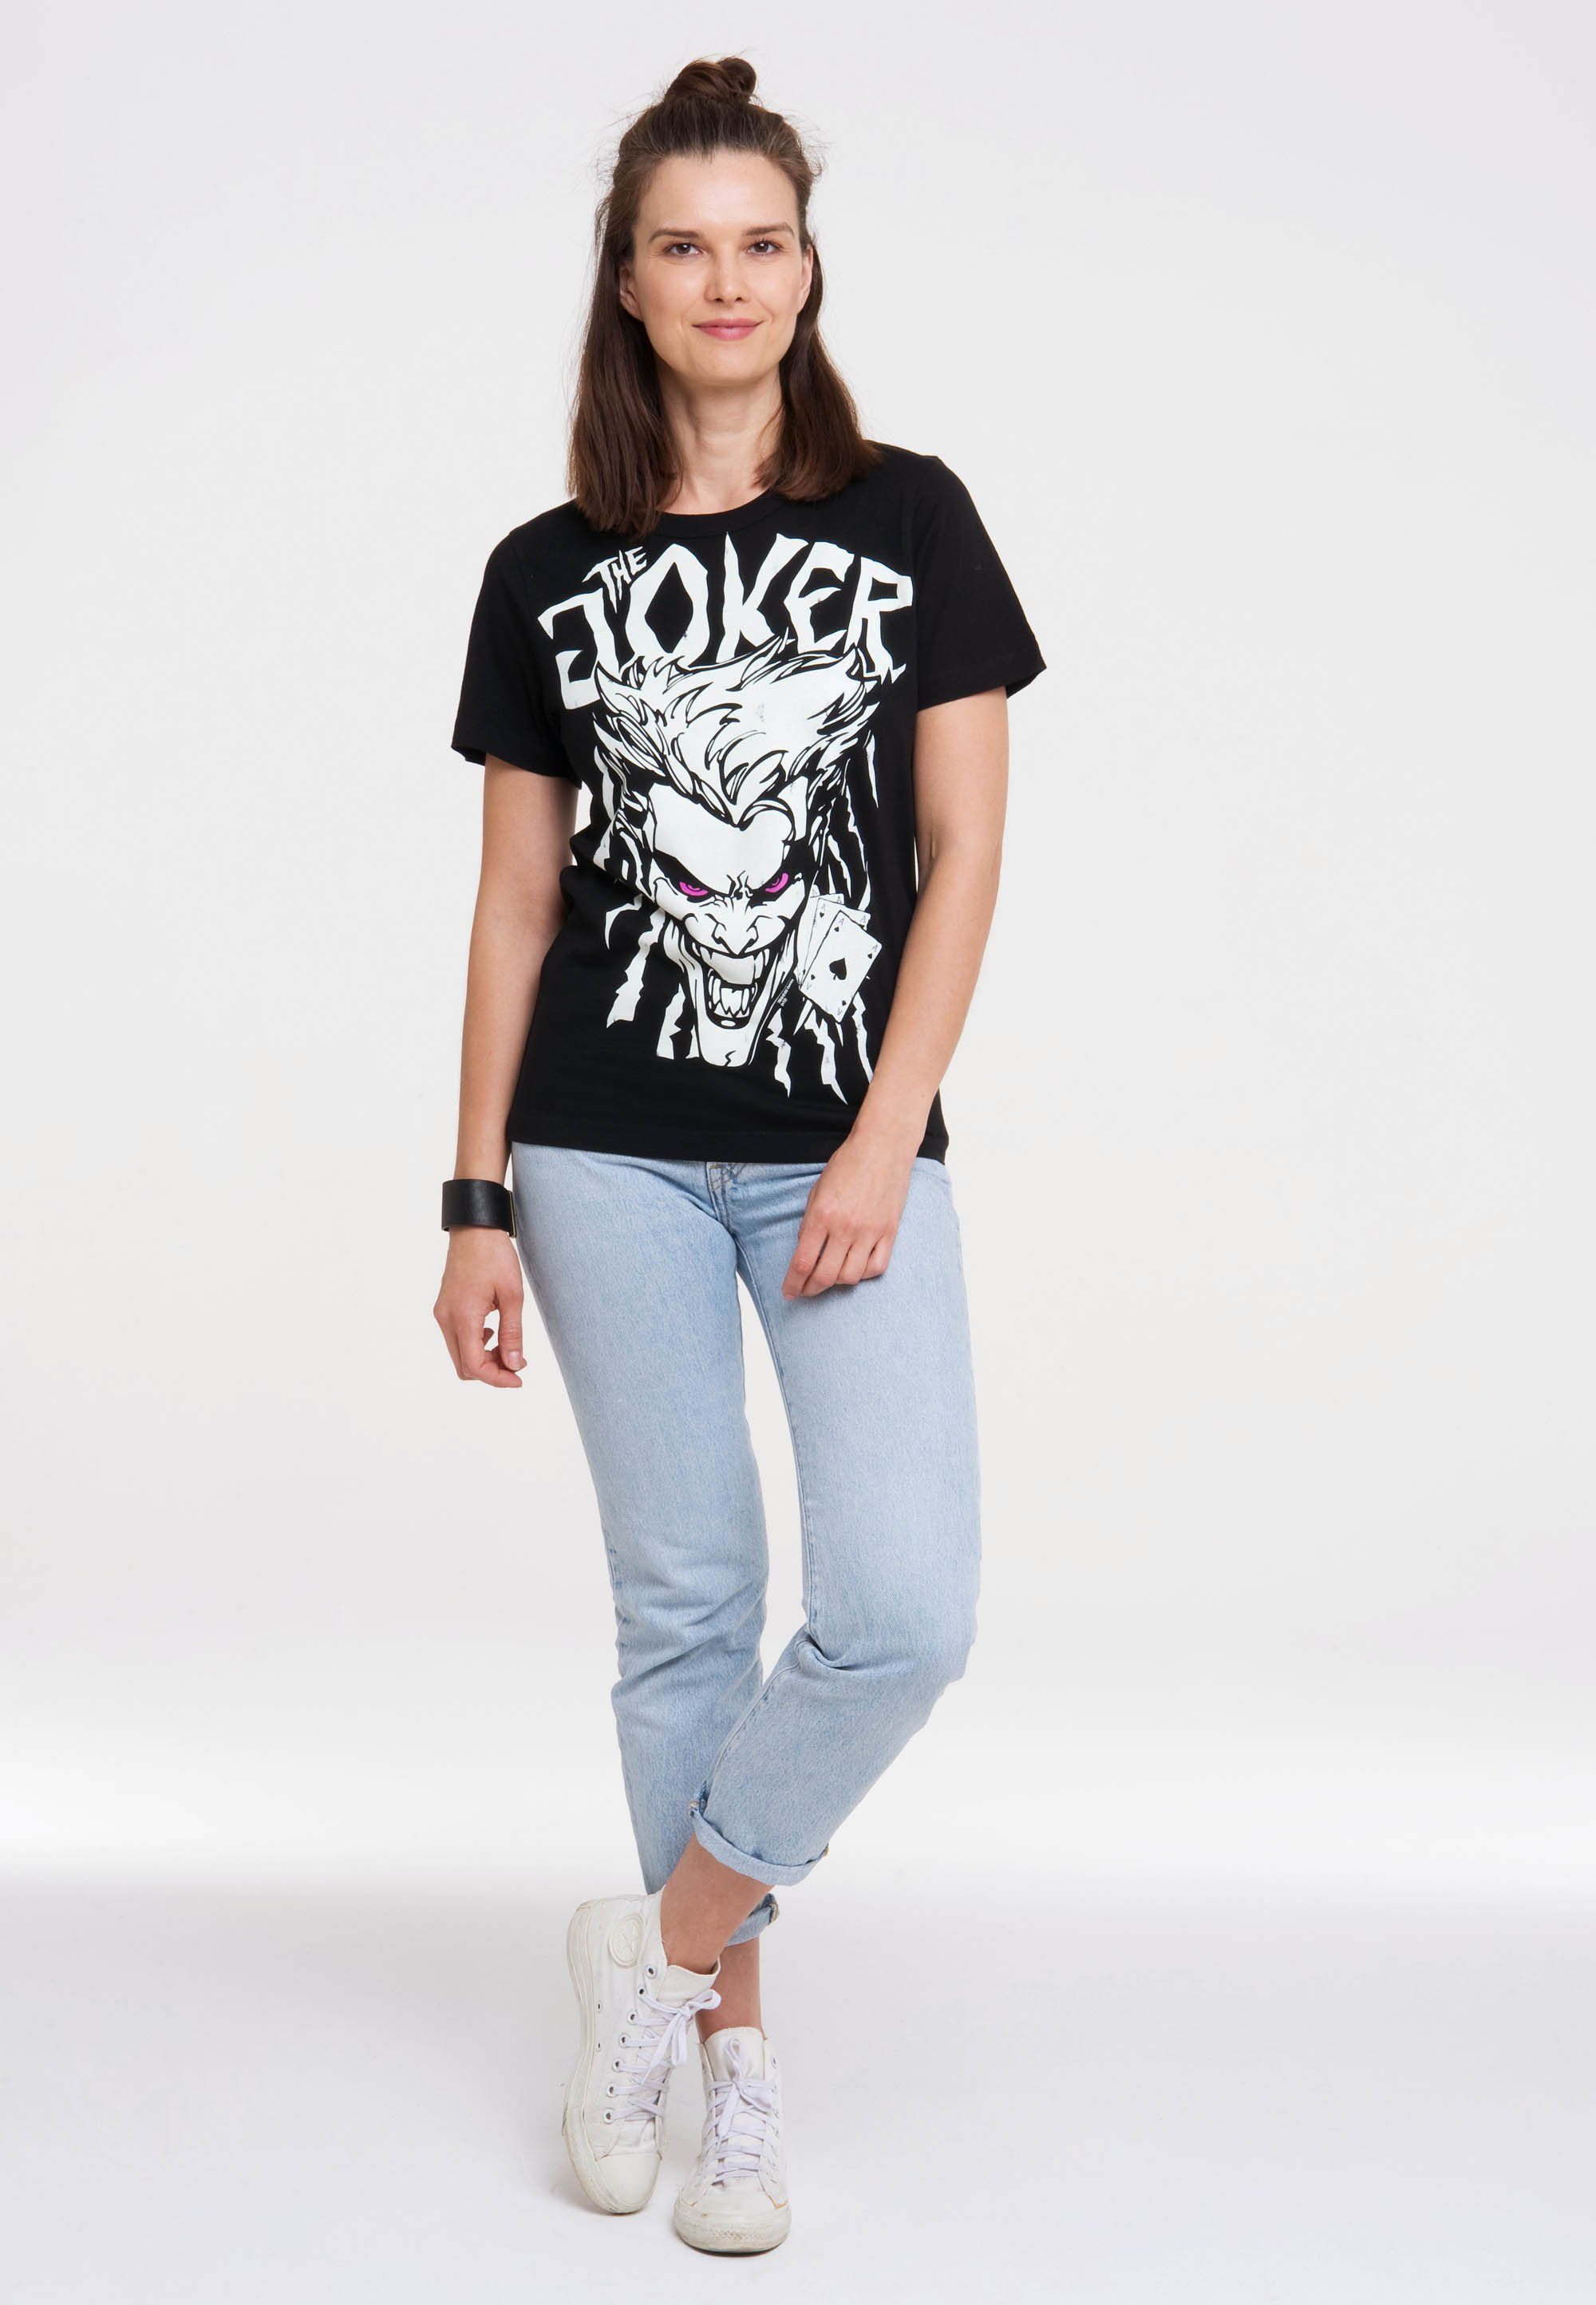 Joker Comics DC - T-Shirt LOGOSHIRT mit Print lizenziertem